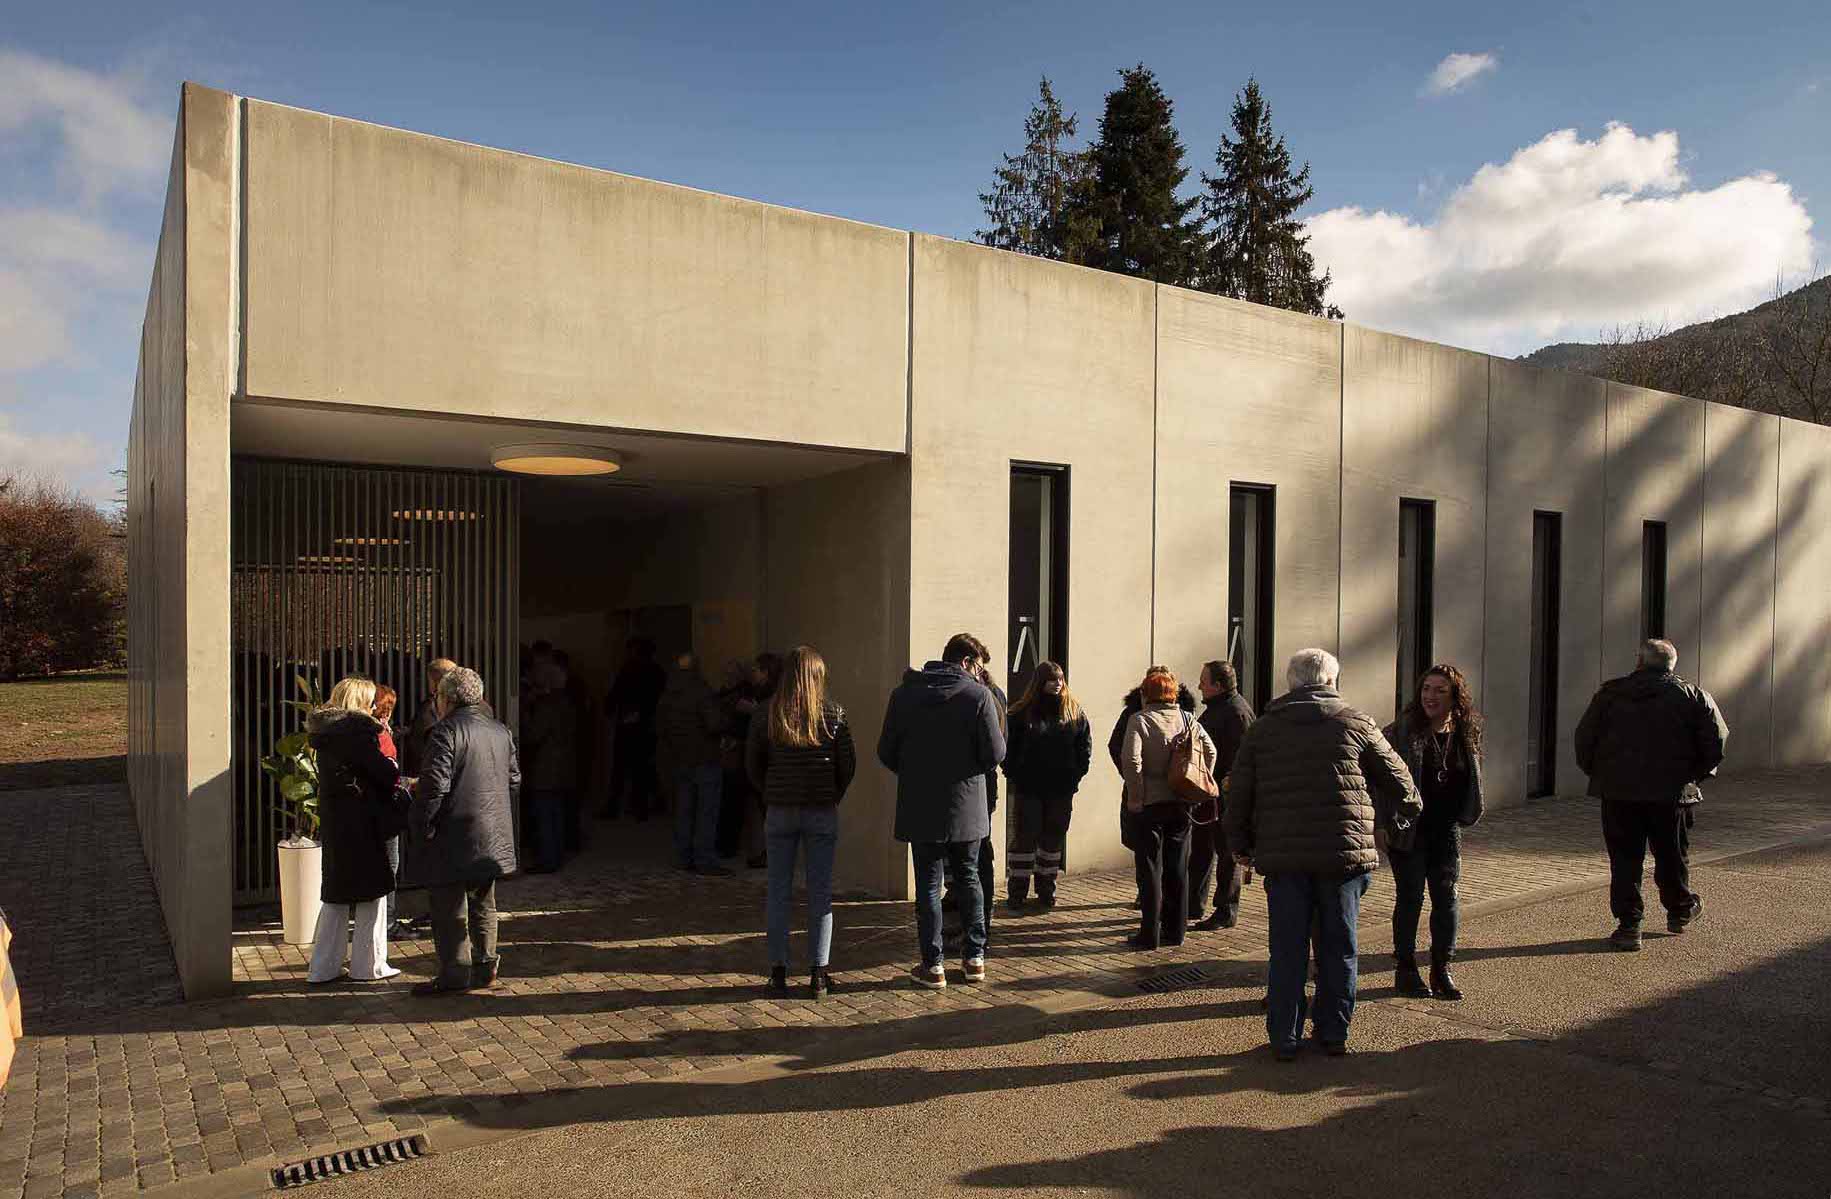 Áltima inaugura un tanatorio público-privado en la localidad de Sant Joan de les Abadesses